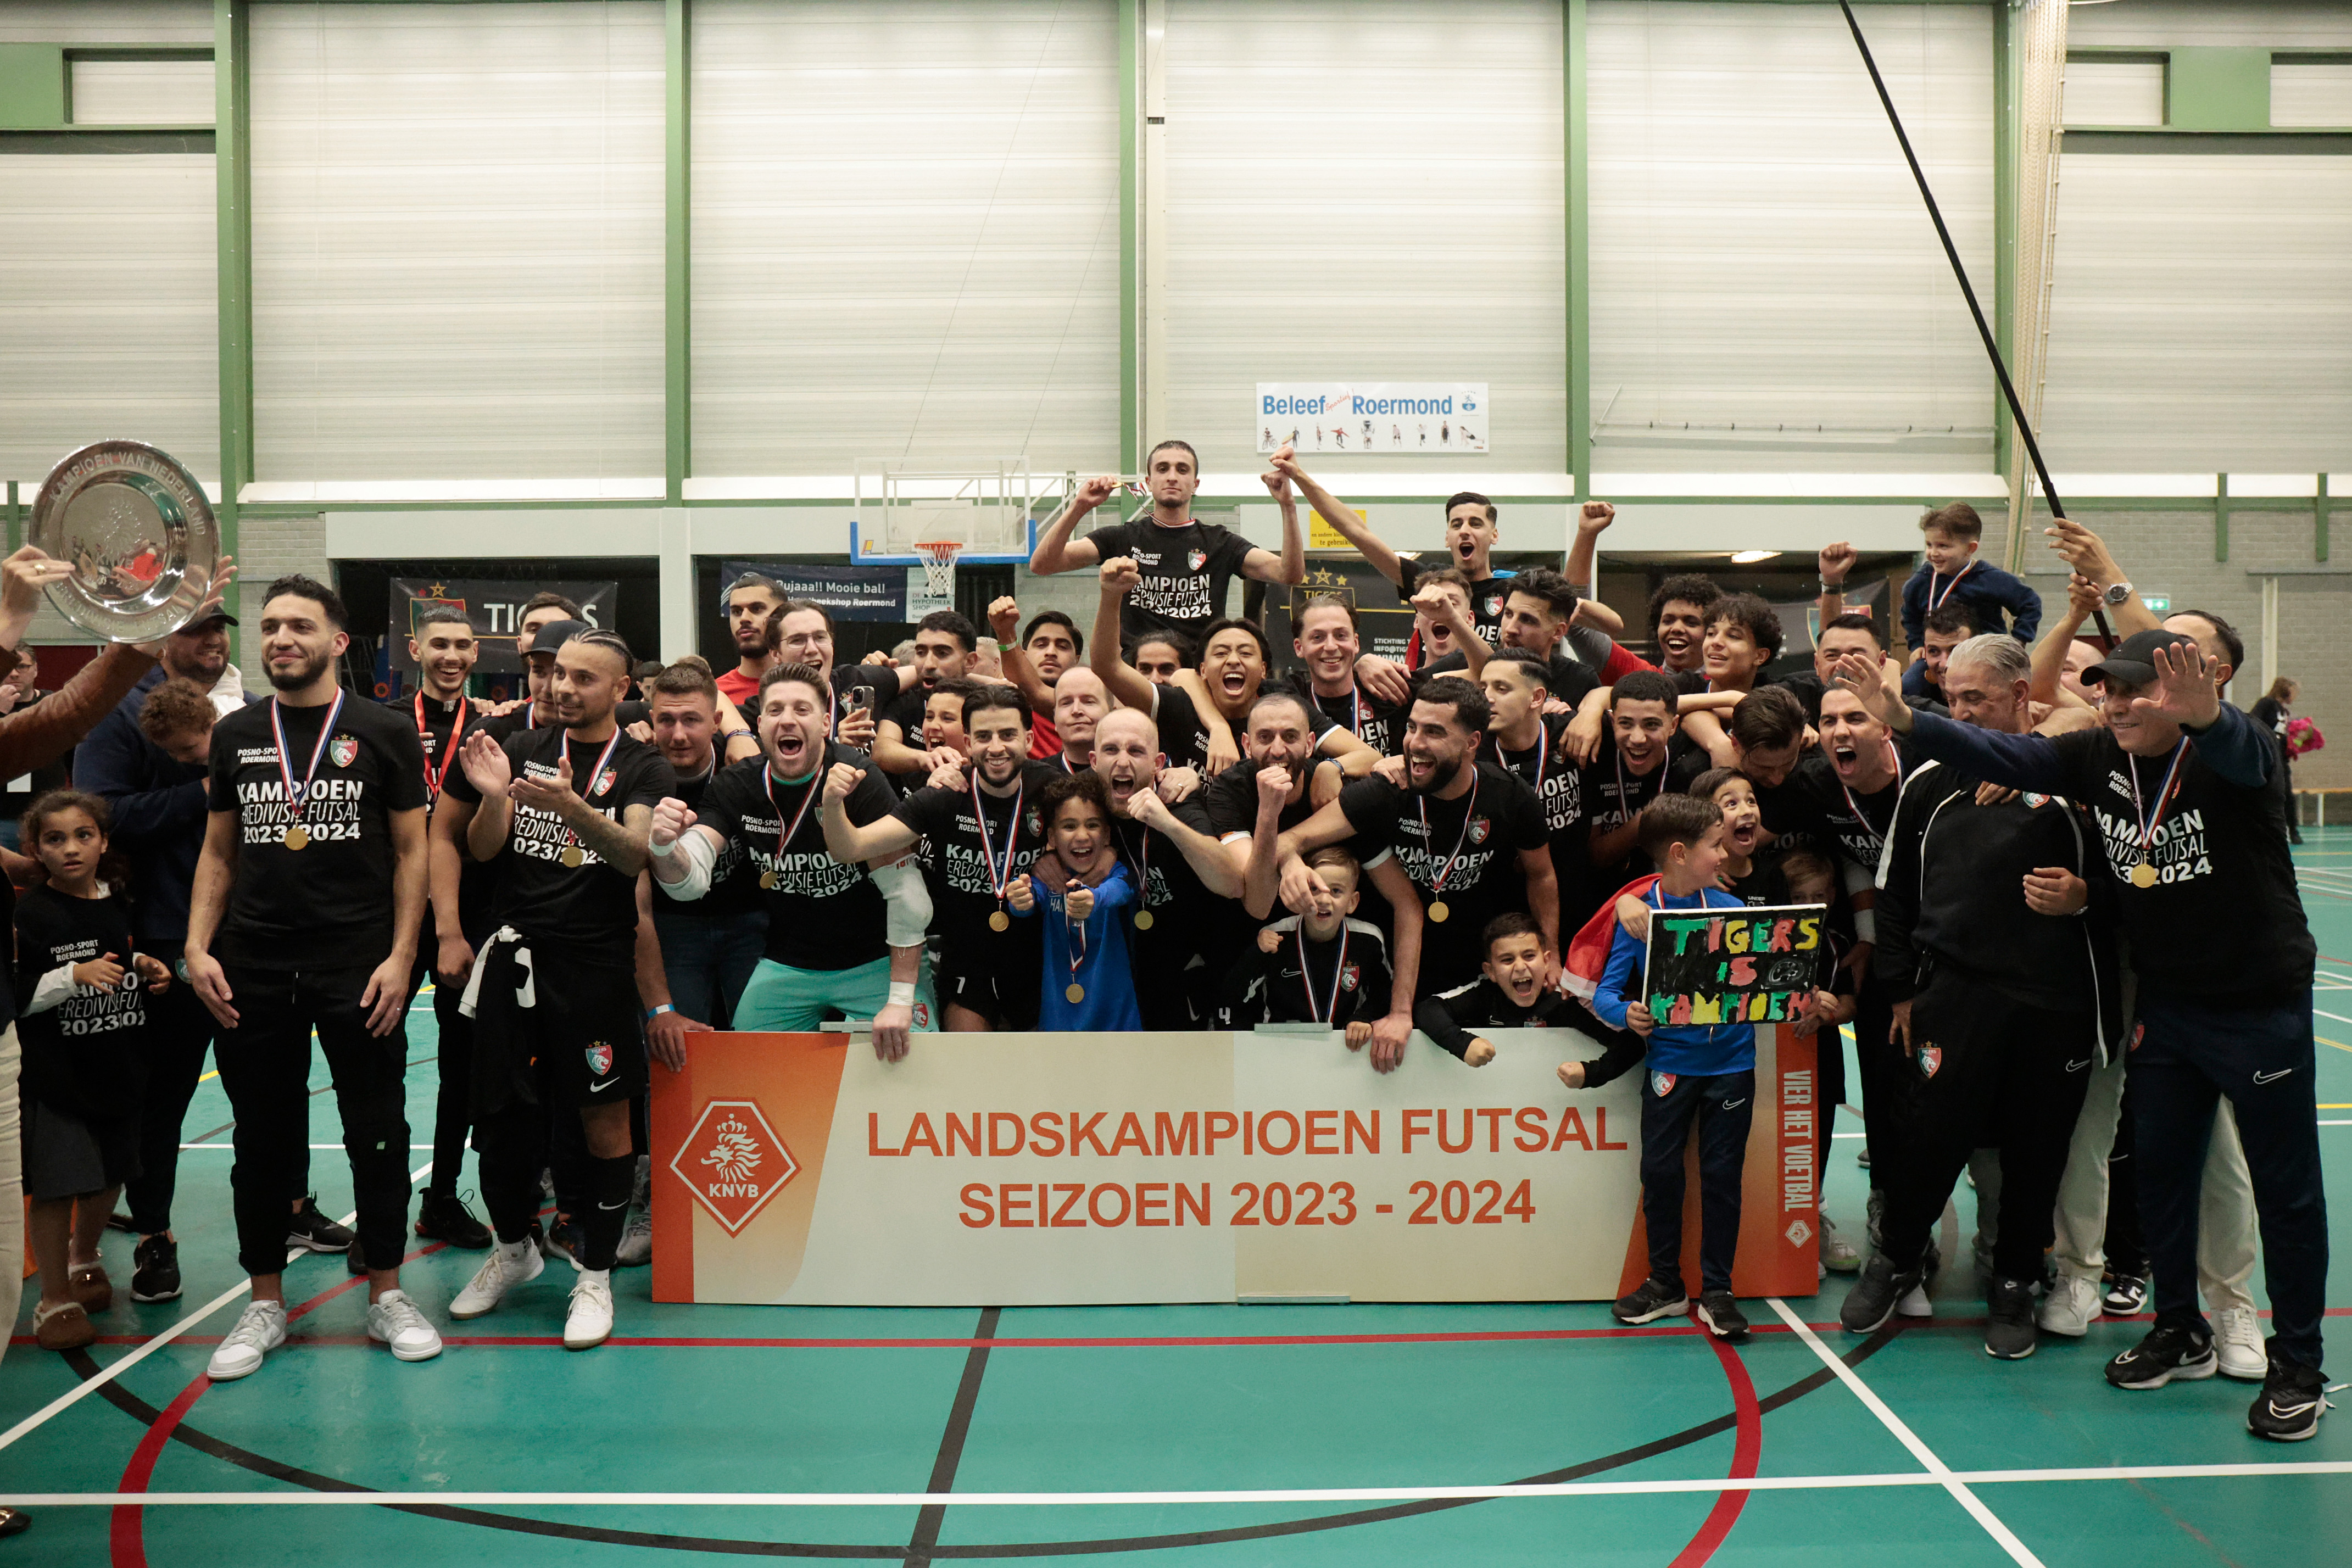 Tigers Roermond futsalkampioen van Nederland